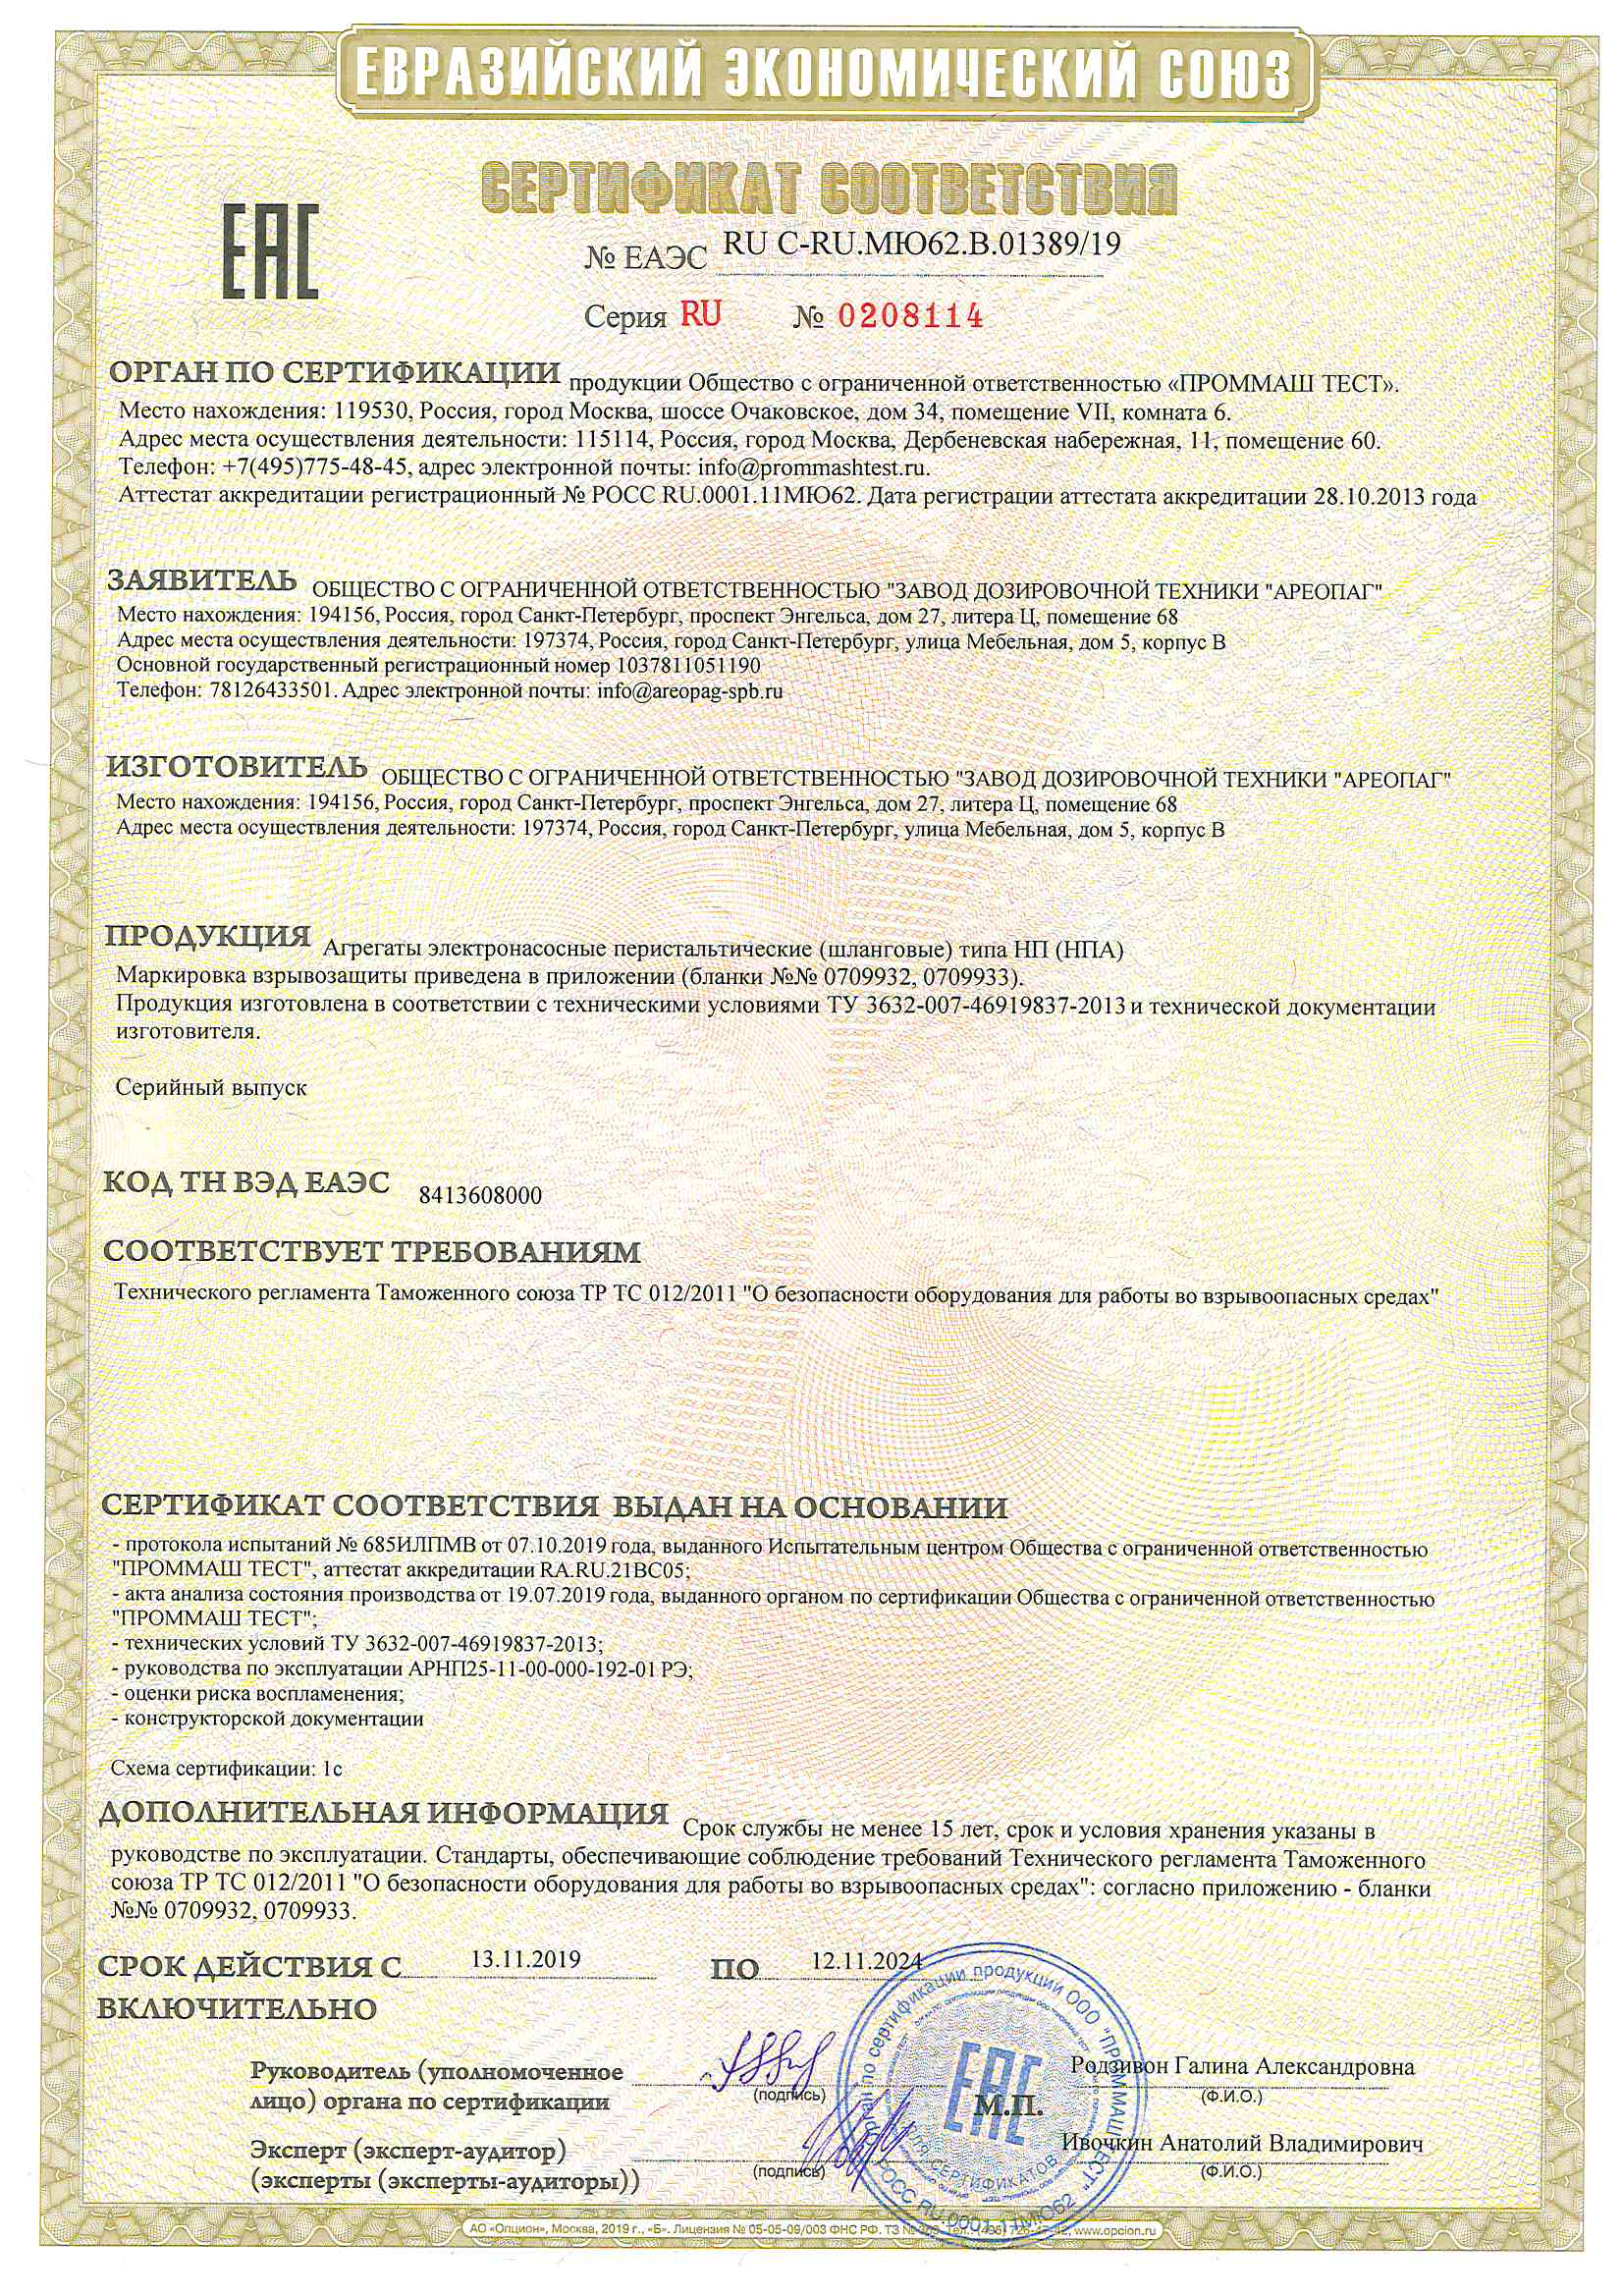 Сертификат соответствия № ЕАЭС RU C-RU.МЮ62.В.01389-19 на агрегаты электронасосные перистальтические (шланговые)типа (НПА) предназначено для применения во взрывоопасных средах.